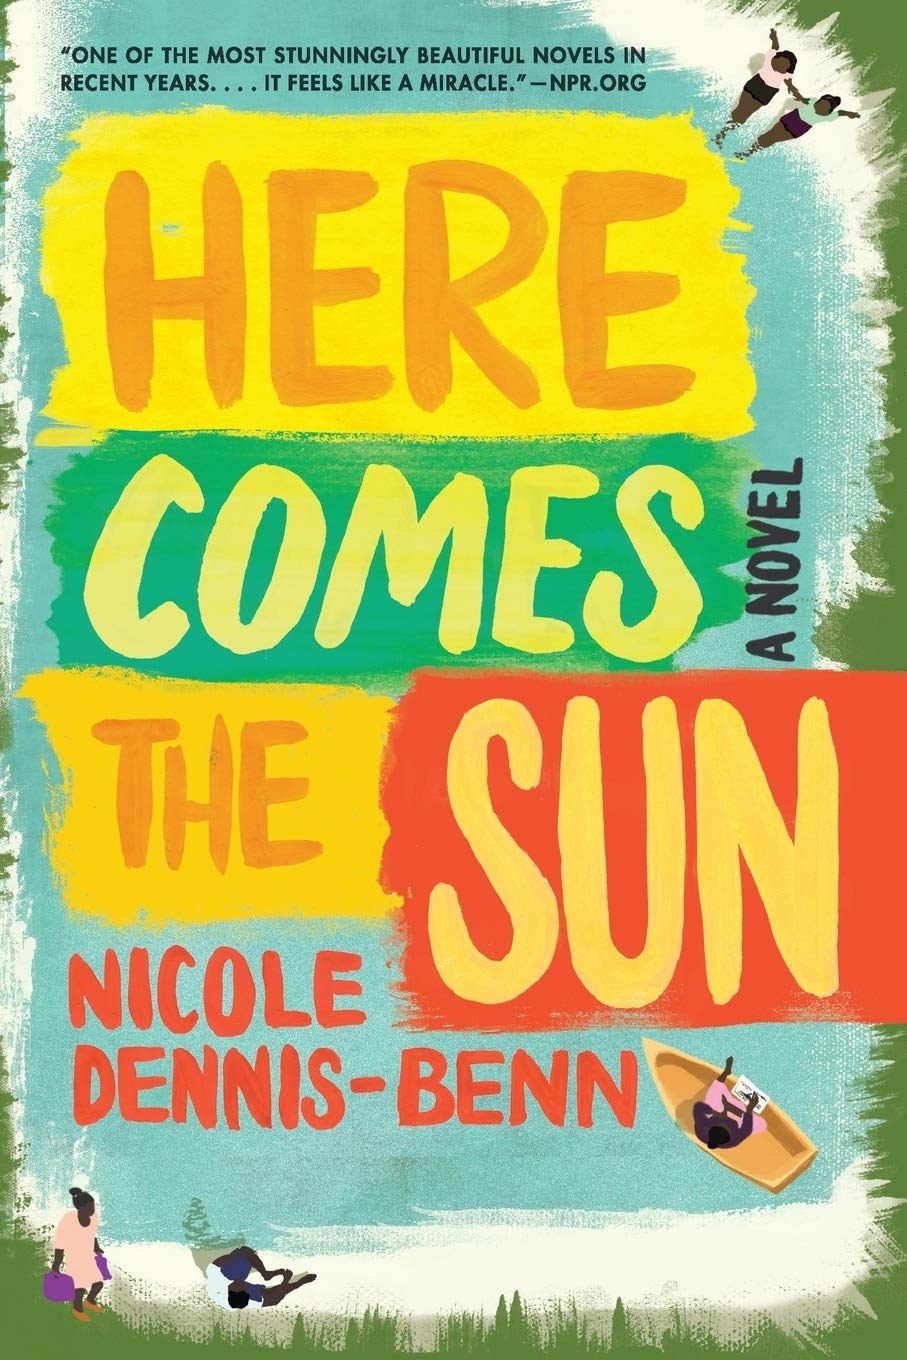 的封面“Sun"来了;在妮可Dennis-Benn